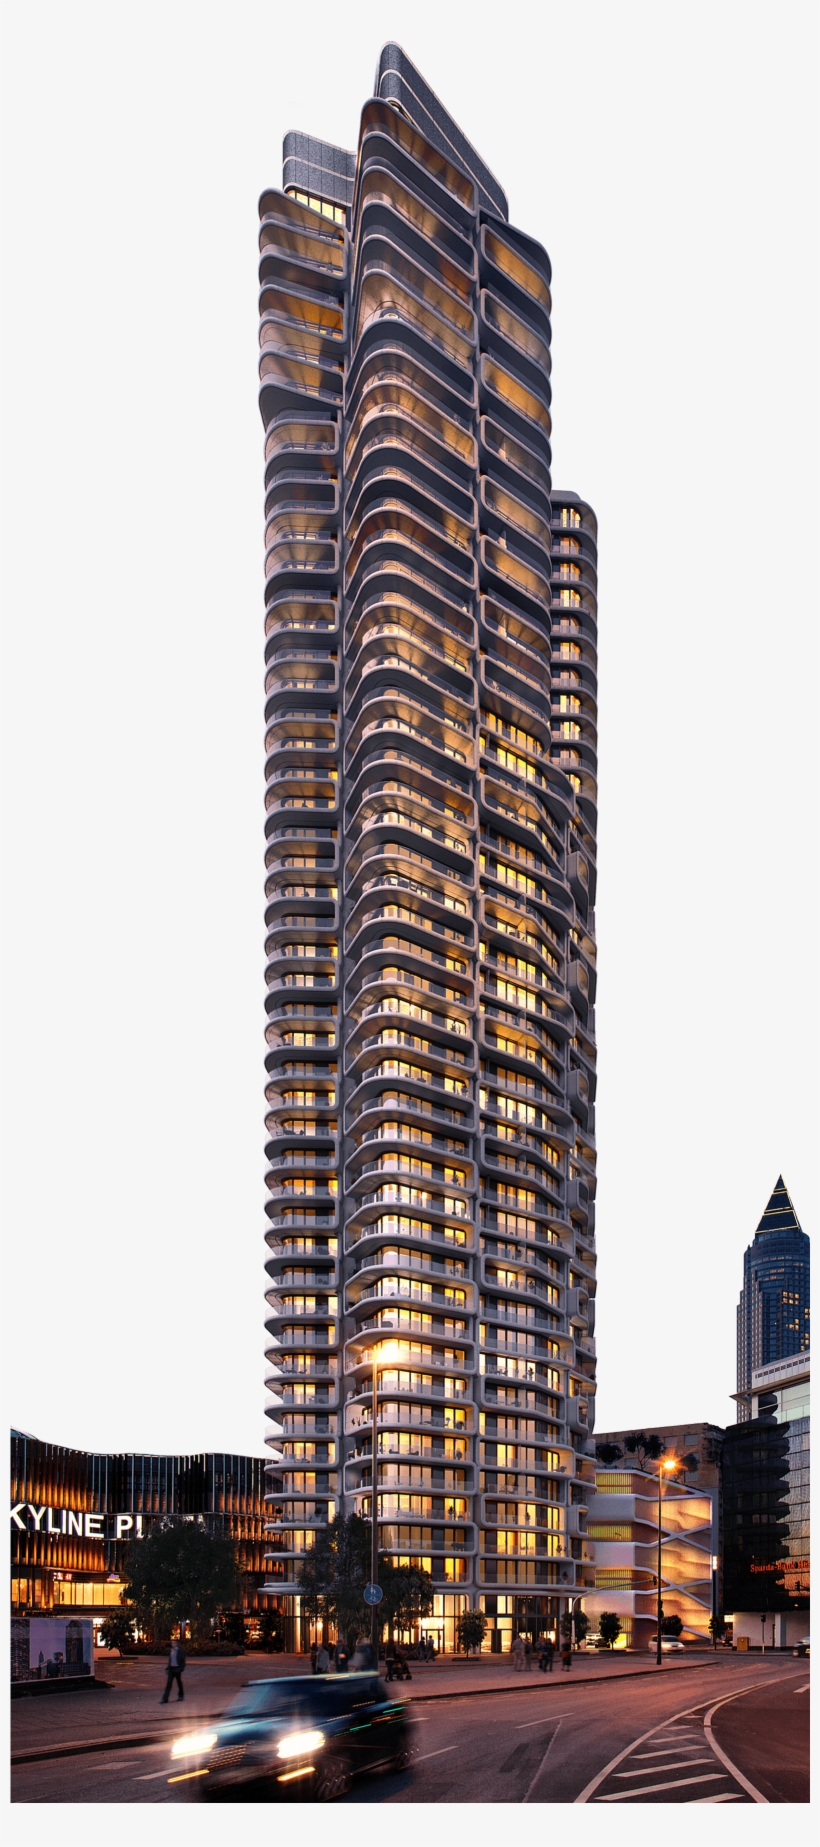 Image Result For Frankfurt Grand Tower - Grand Tower Frankfurt, transparent png #1531113